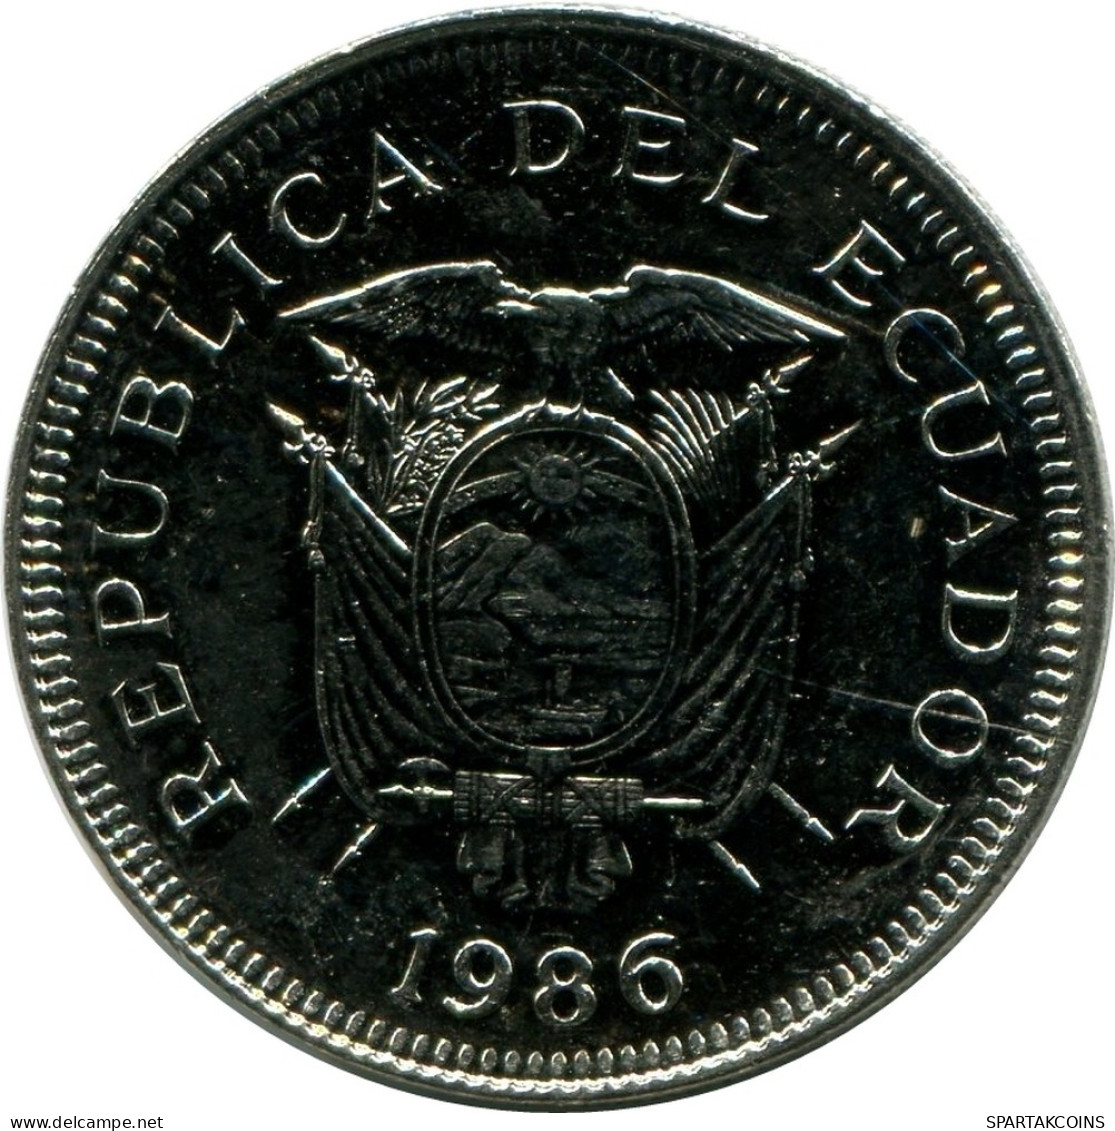 1 SUCRE 1986 ECUADOR UNC Moneda #M10237.E - Ecuador